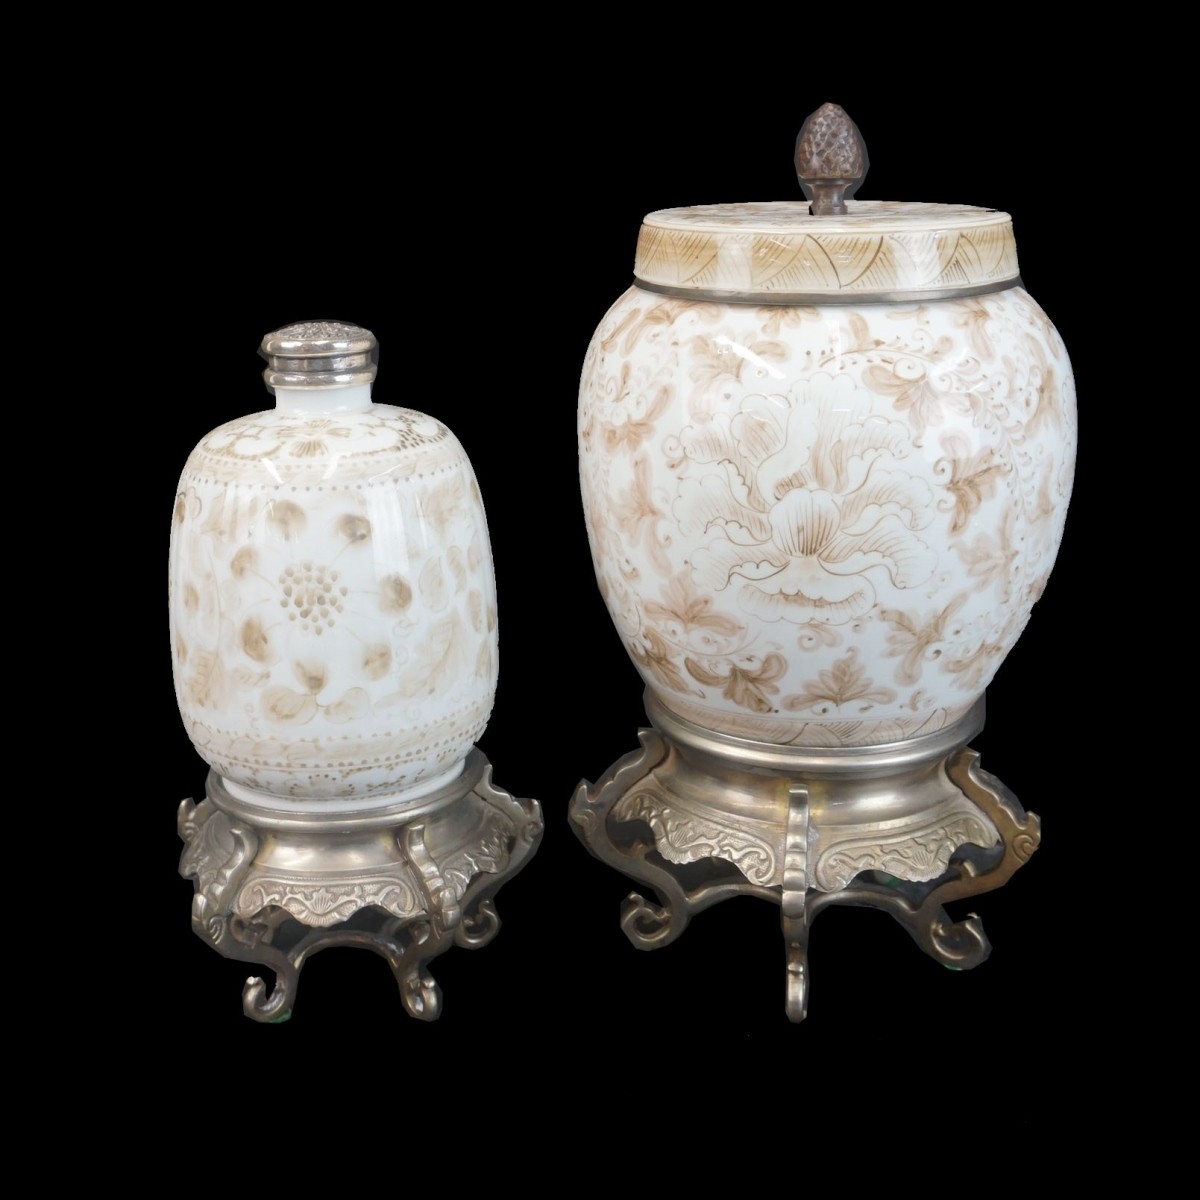 Oriental Style Jars